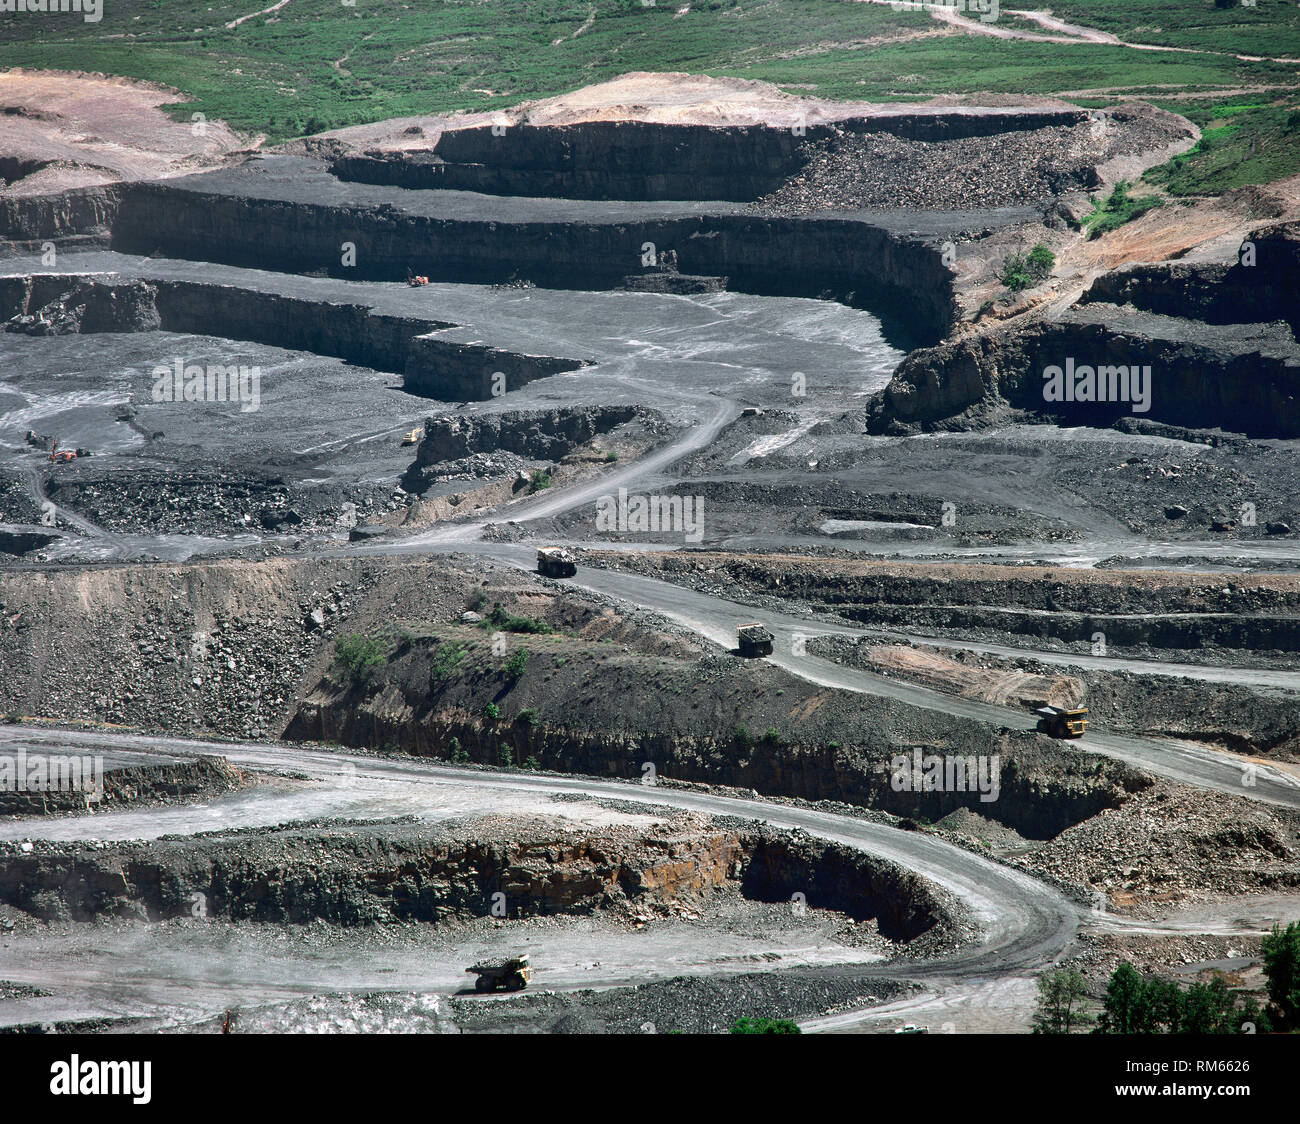 Spain, Castile-Leon, province of Leon, Lillo del Bierzo, municipality of Fabero. Open-pit mining of antracite. Panoramic view. Stock Photo